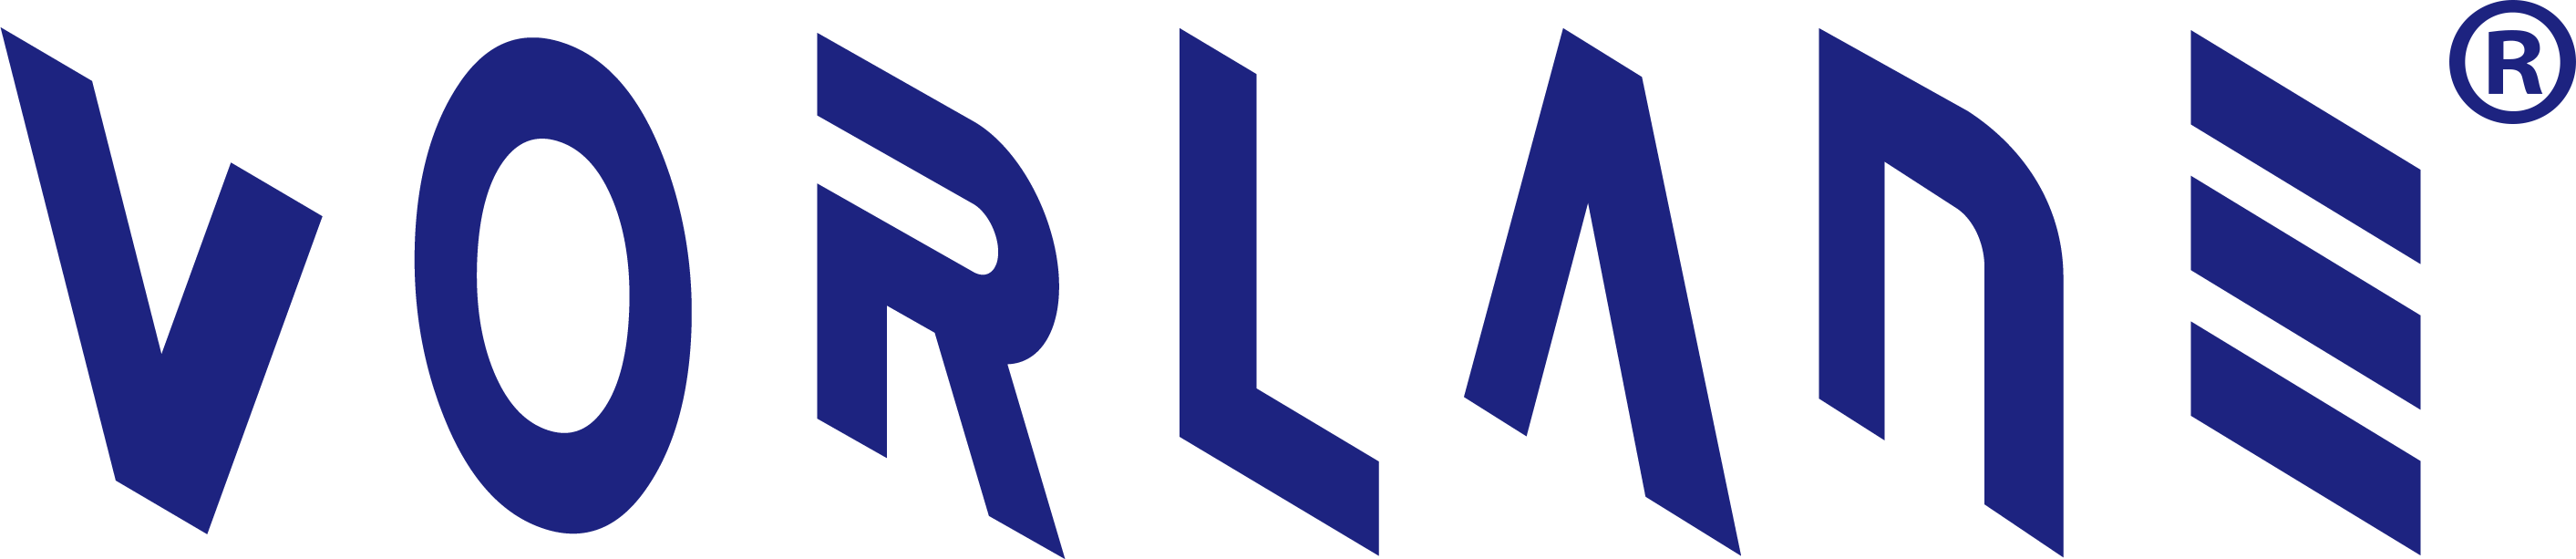 logotipo de vorlane r